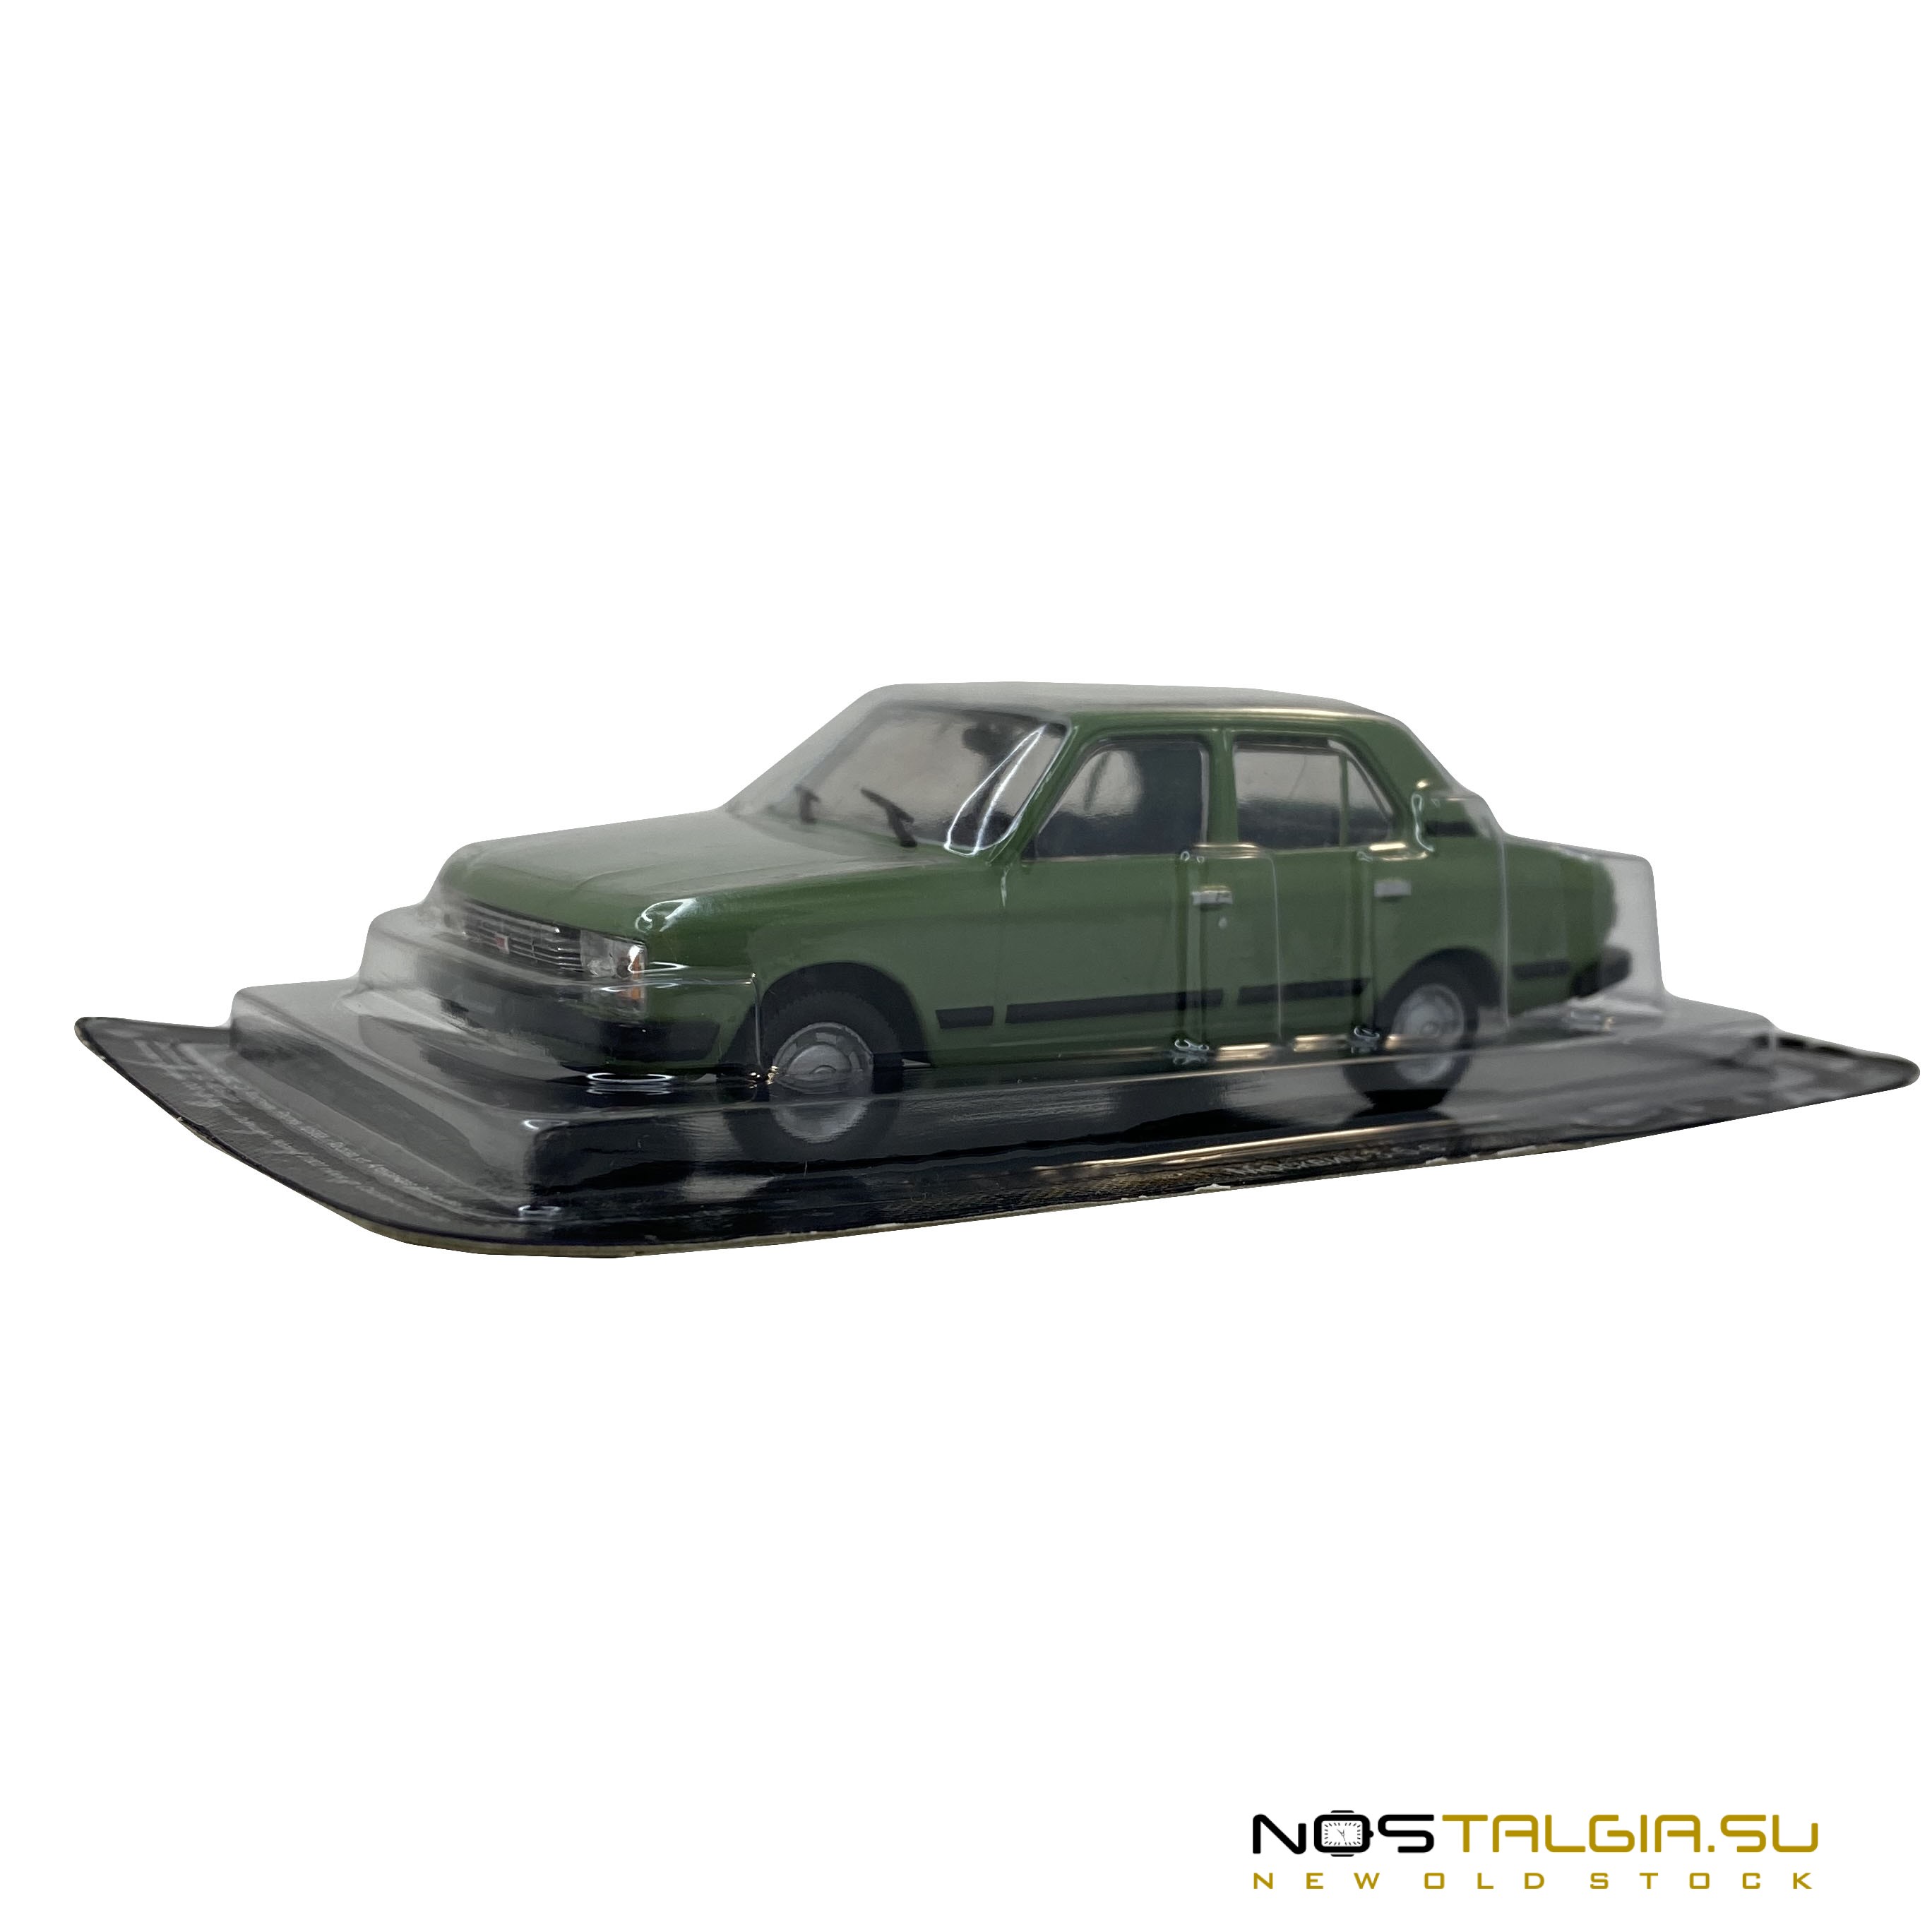 Moskvich汽车的比例模型-3-5-6 ,比例尺1:43,包装,新储存